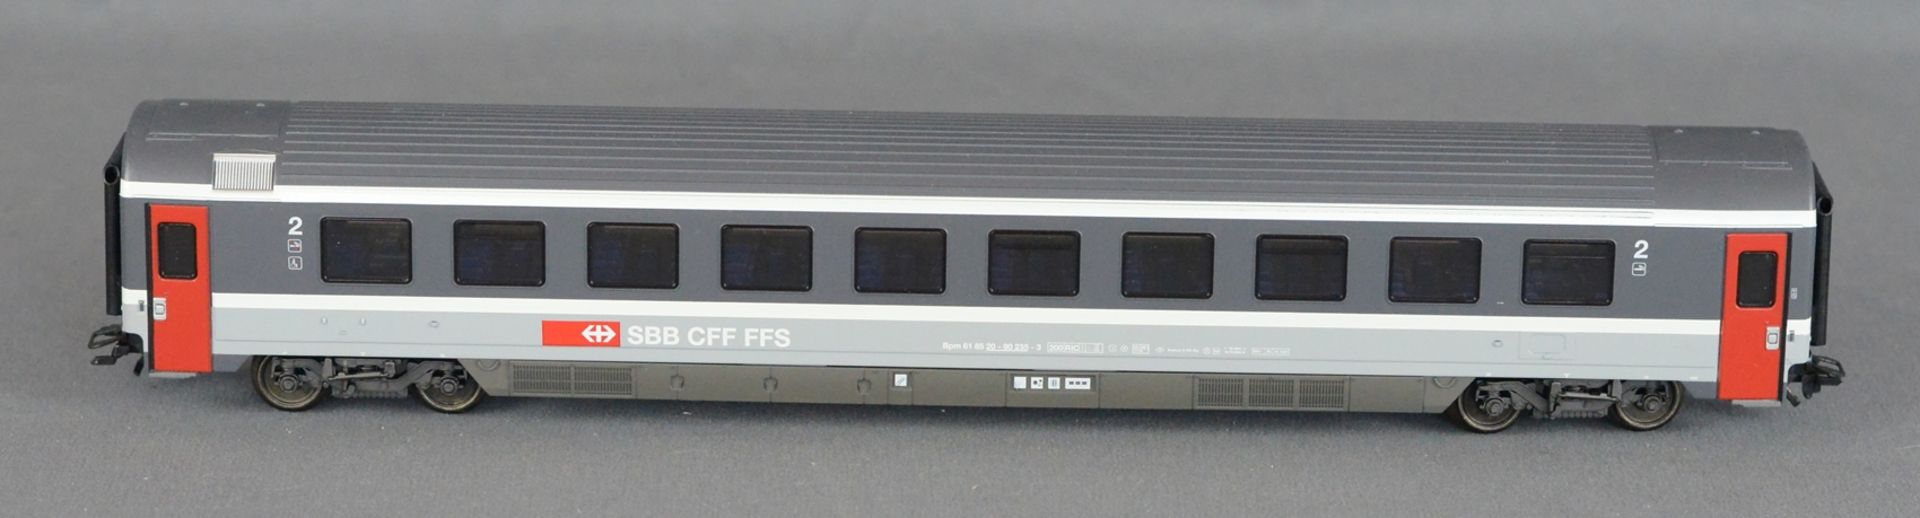 Märklin HO 4367 Wagenset Eurocity SBB, unbespielt und in Originalverpackung - Bild 5 aus 6